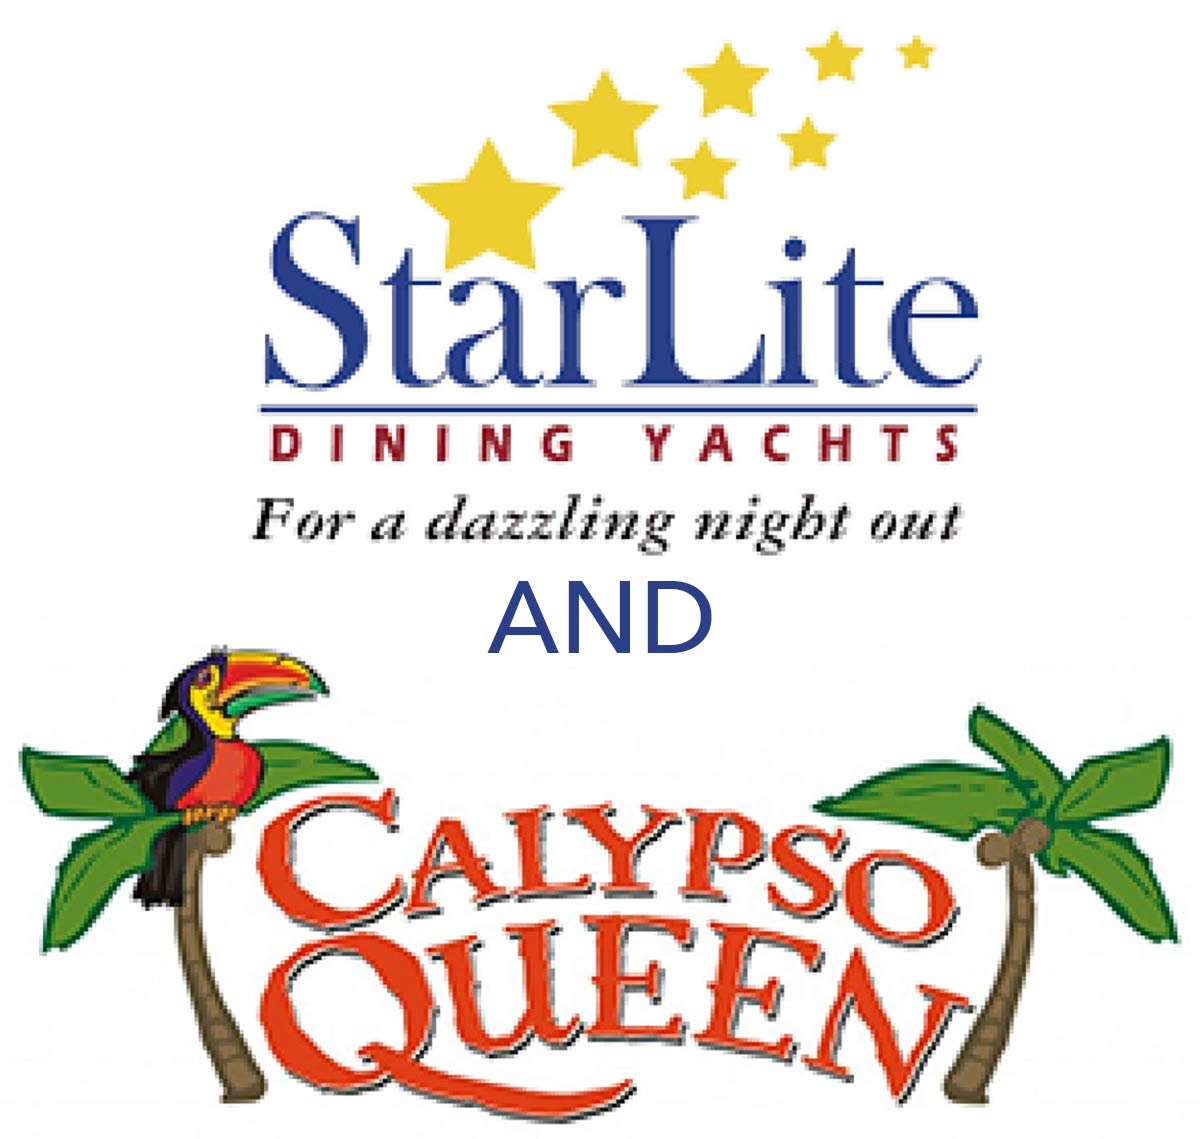 starlite and clypso queen logos